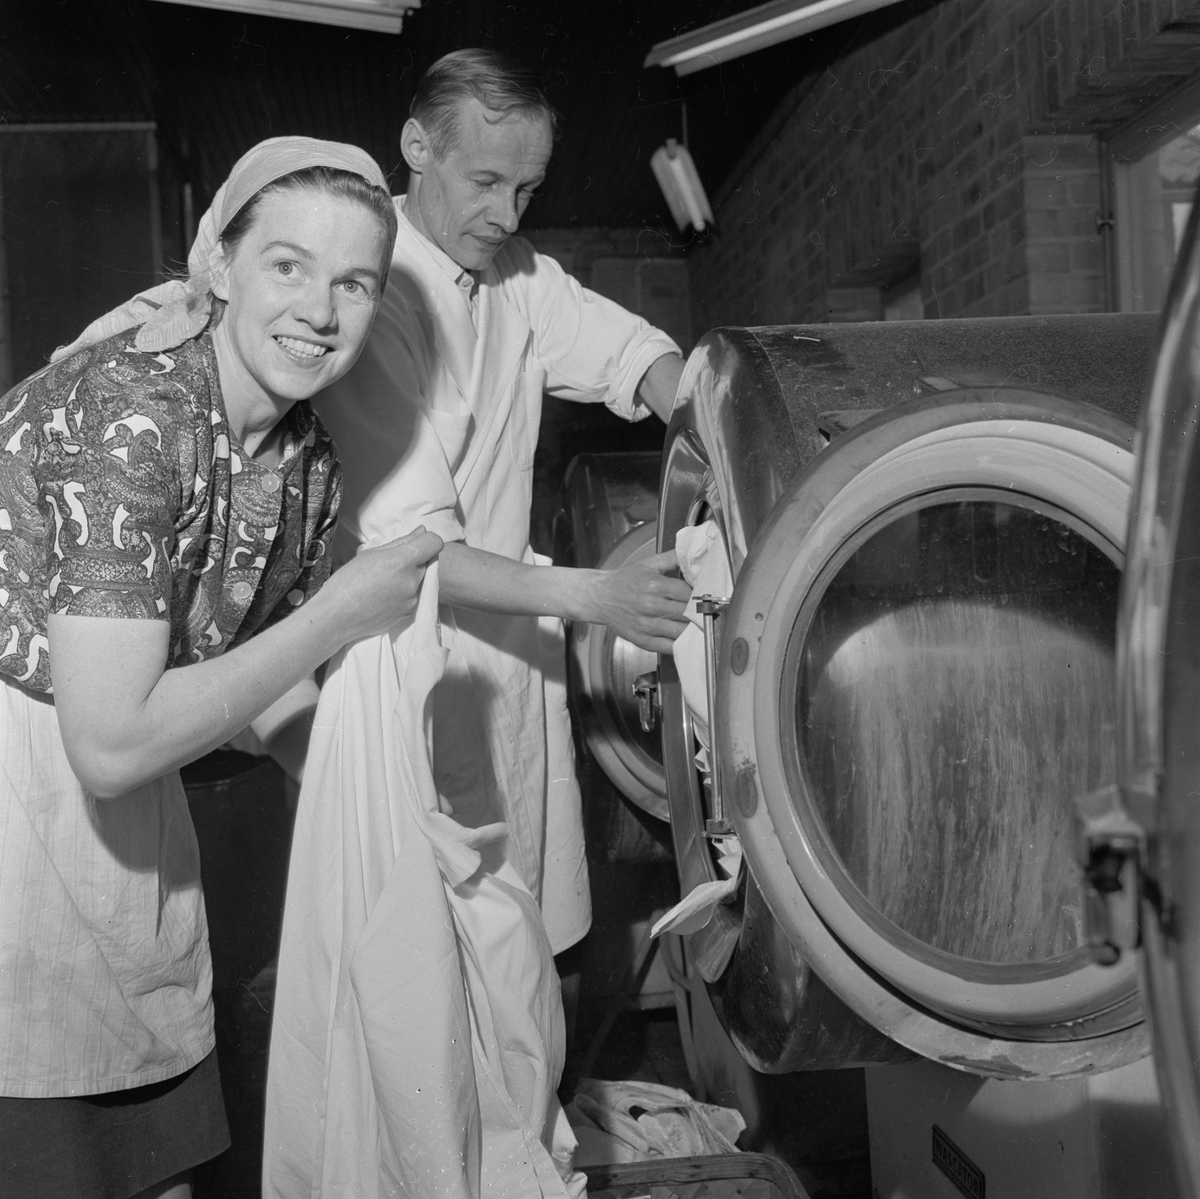 Tierpsortens tvättinrättning på Svanbygatan i Tierp 1965.
Varje måndag fick husmödrar använda tvätteriets maskiner.
Ture Broberg hade arbetat som mejeriarbetare i 12 år innan
han skolade om sig till tvättmästare. Han var en av tio som
arbetade vid tvätteriet. År 1967 firade tvättinrättningen
20-årsjubileum och besöktes än en gång av Arbetarbladet.
Journalisten konstaterade då att ”självtvätt tycks vara
någonting som husmödrarna gillar”.